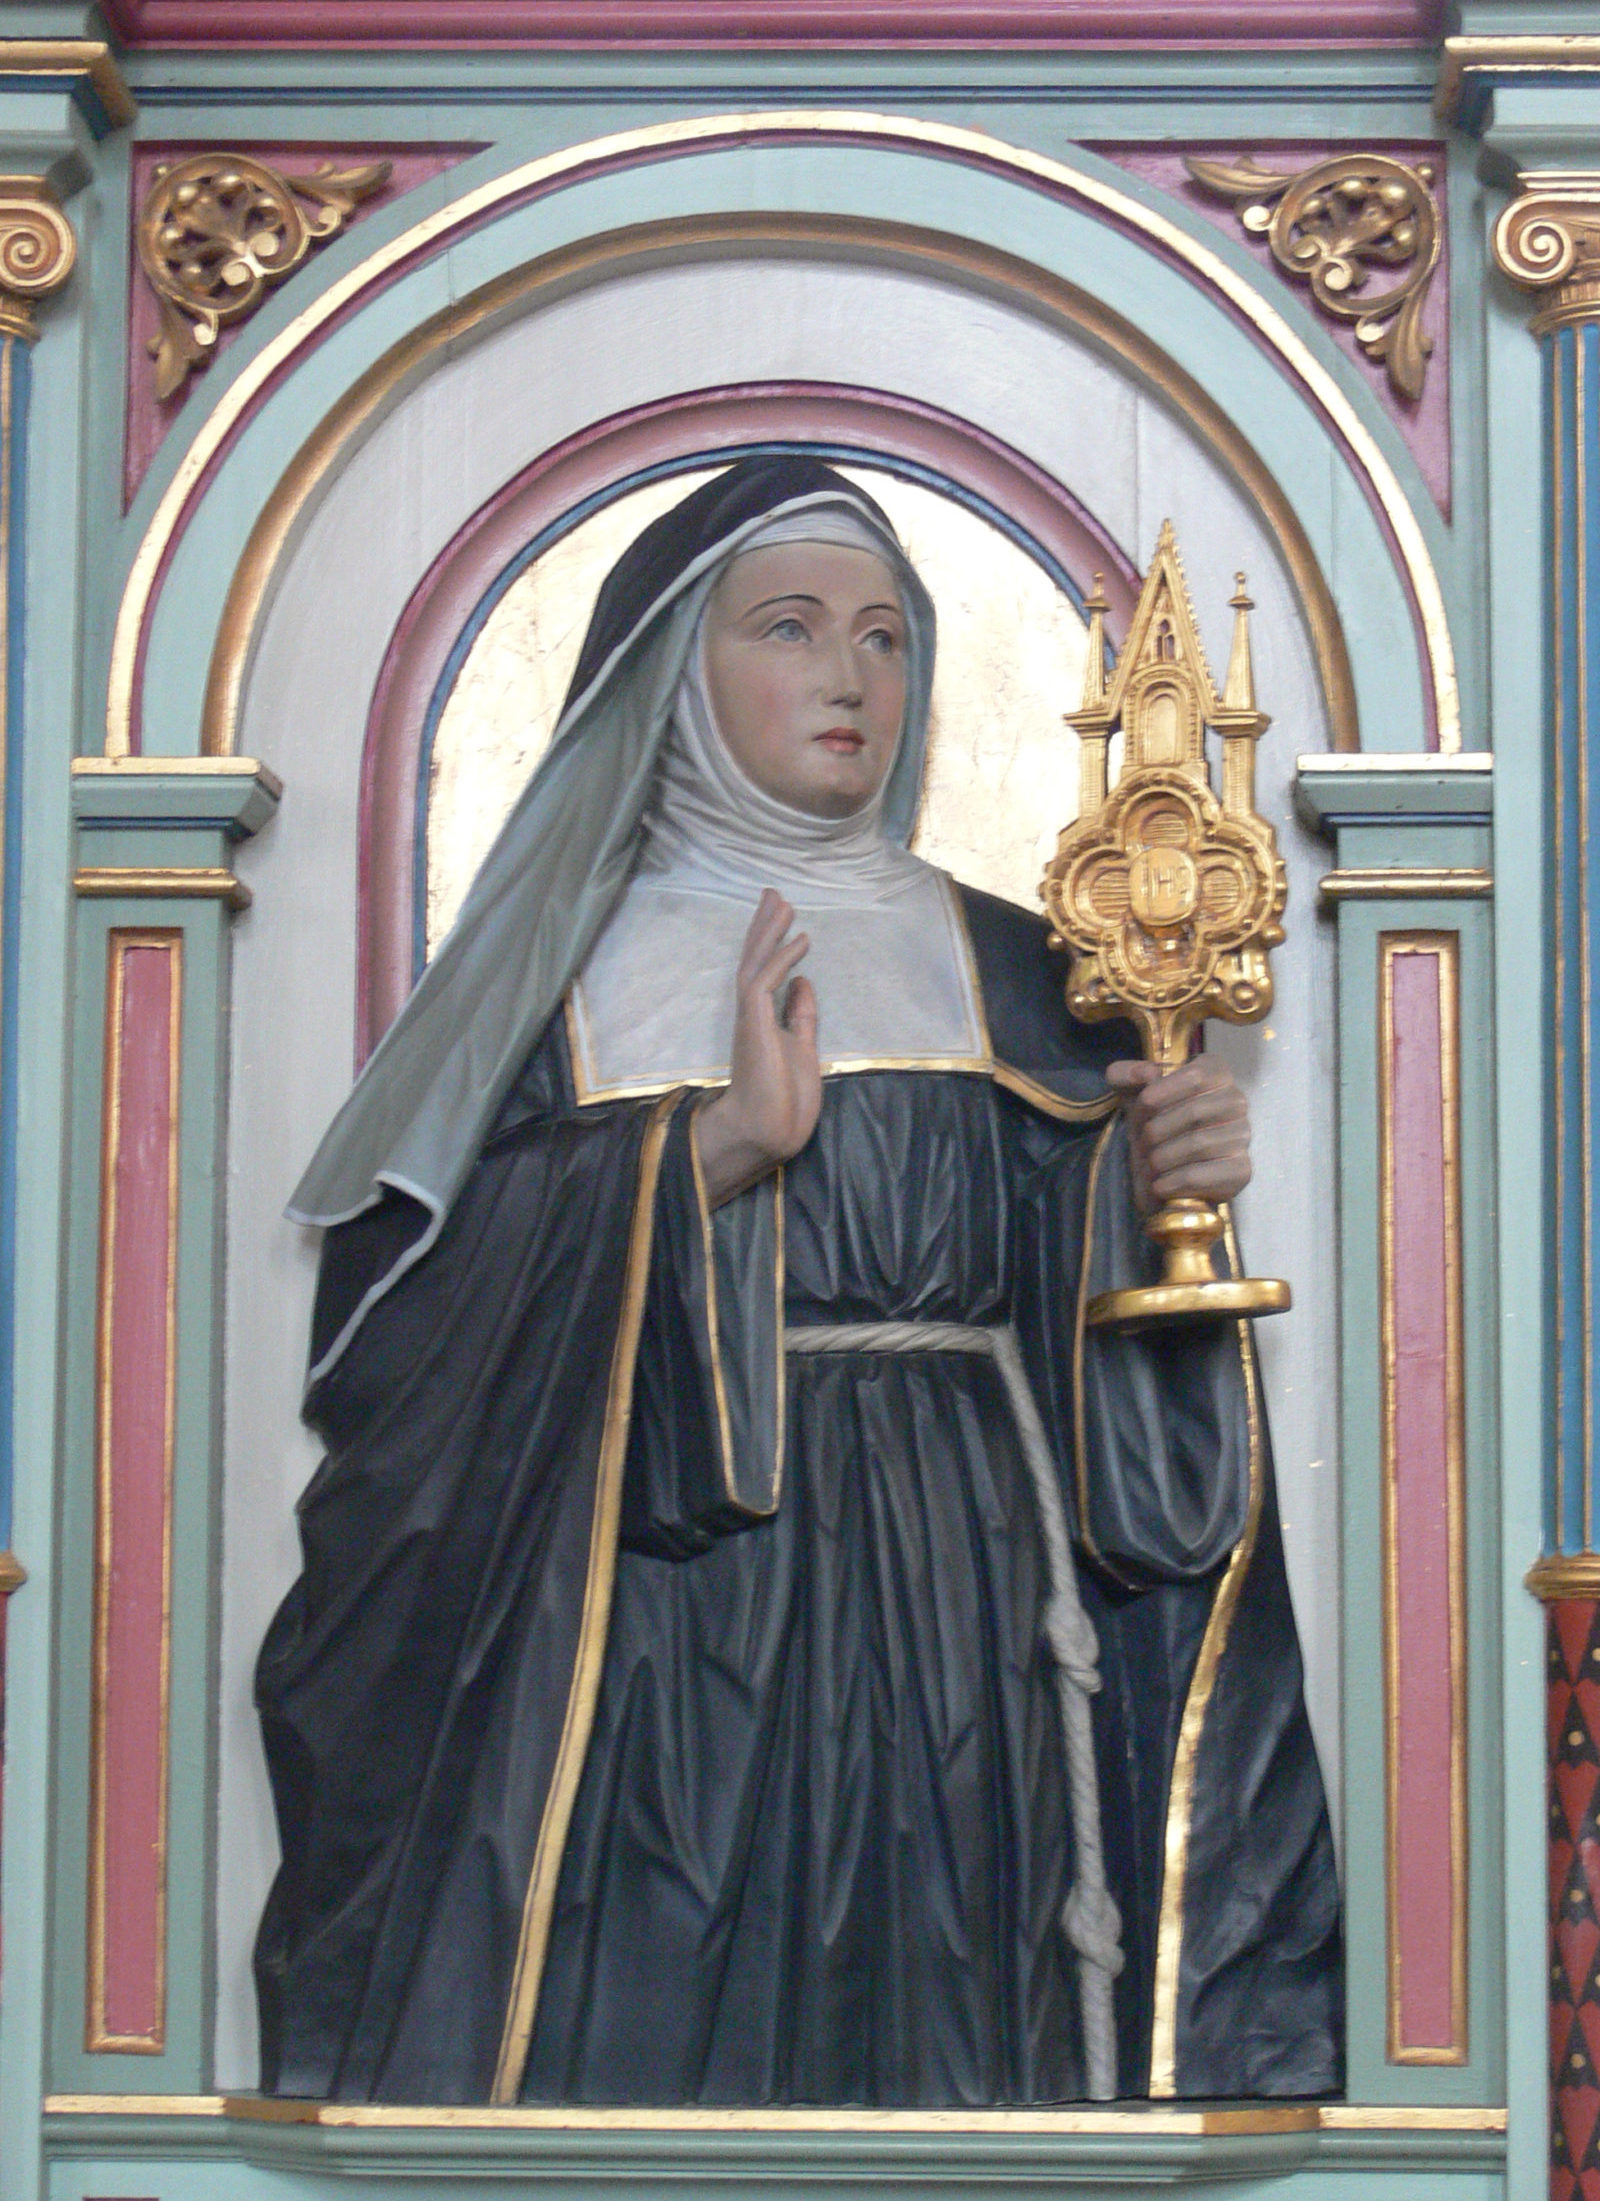 Sainte Julienne de Liège, dans l'église de Merazhofen (Allemagne) © wikimedia commons / Andreas Praefcke